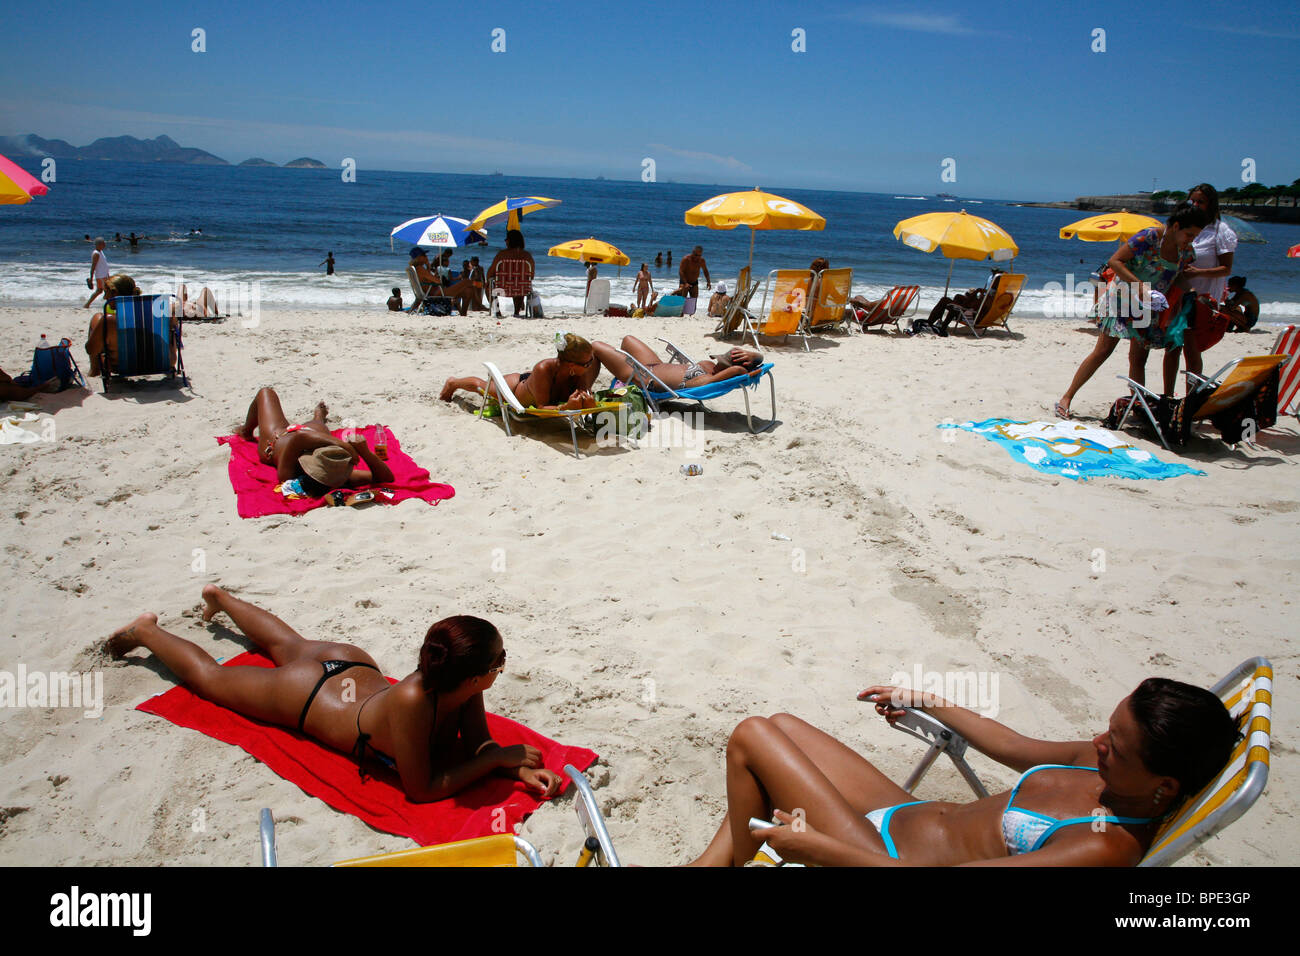 La plage de Copacabana, Rio de Janeiro, Brésil. Banque D'Images